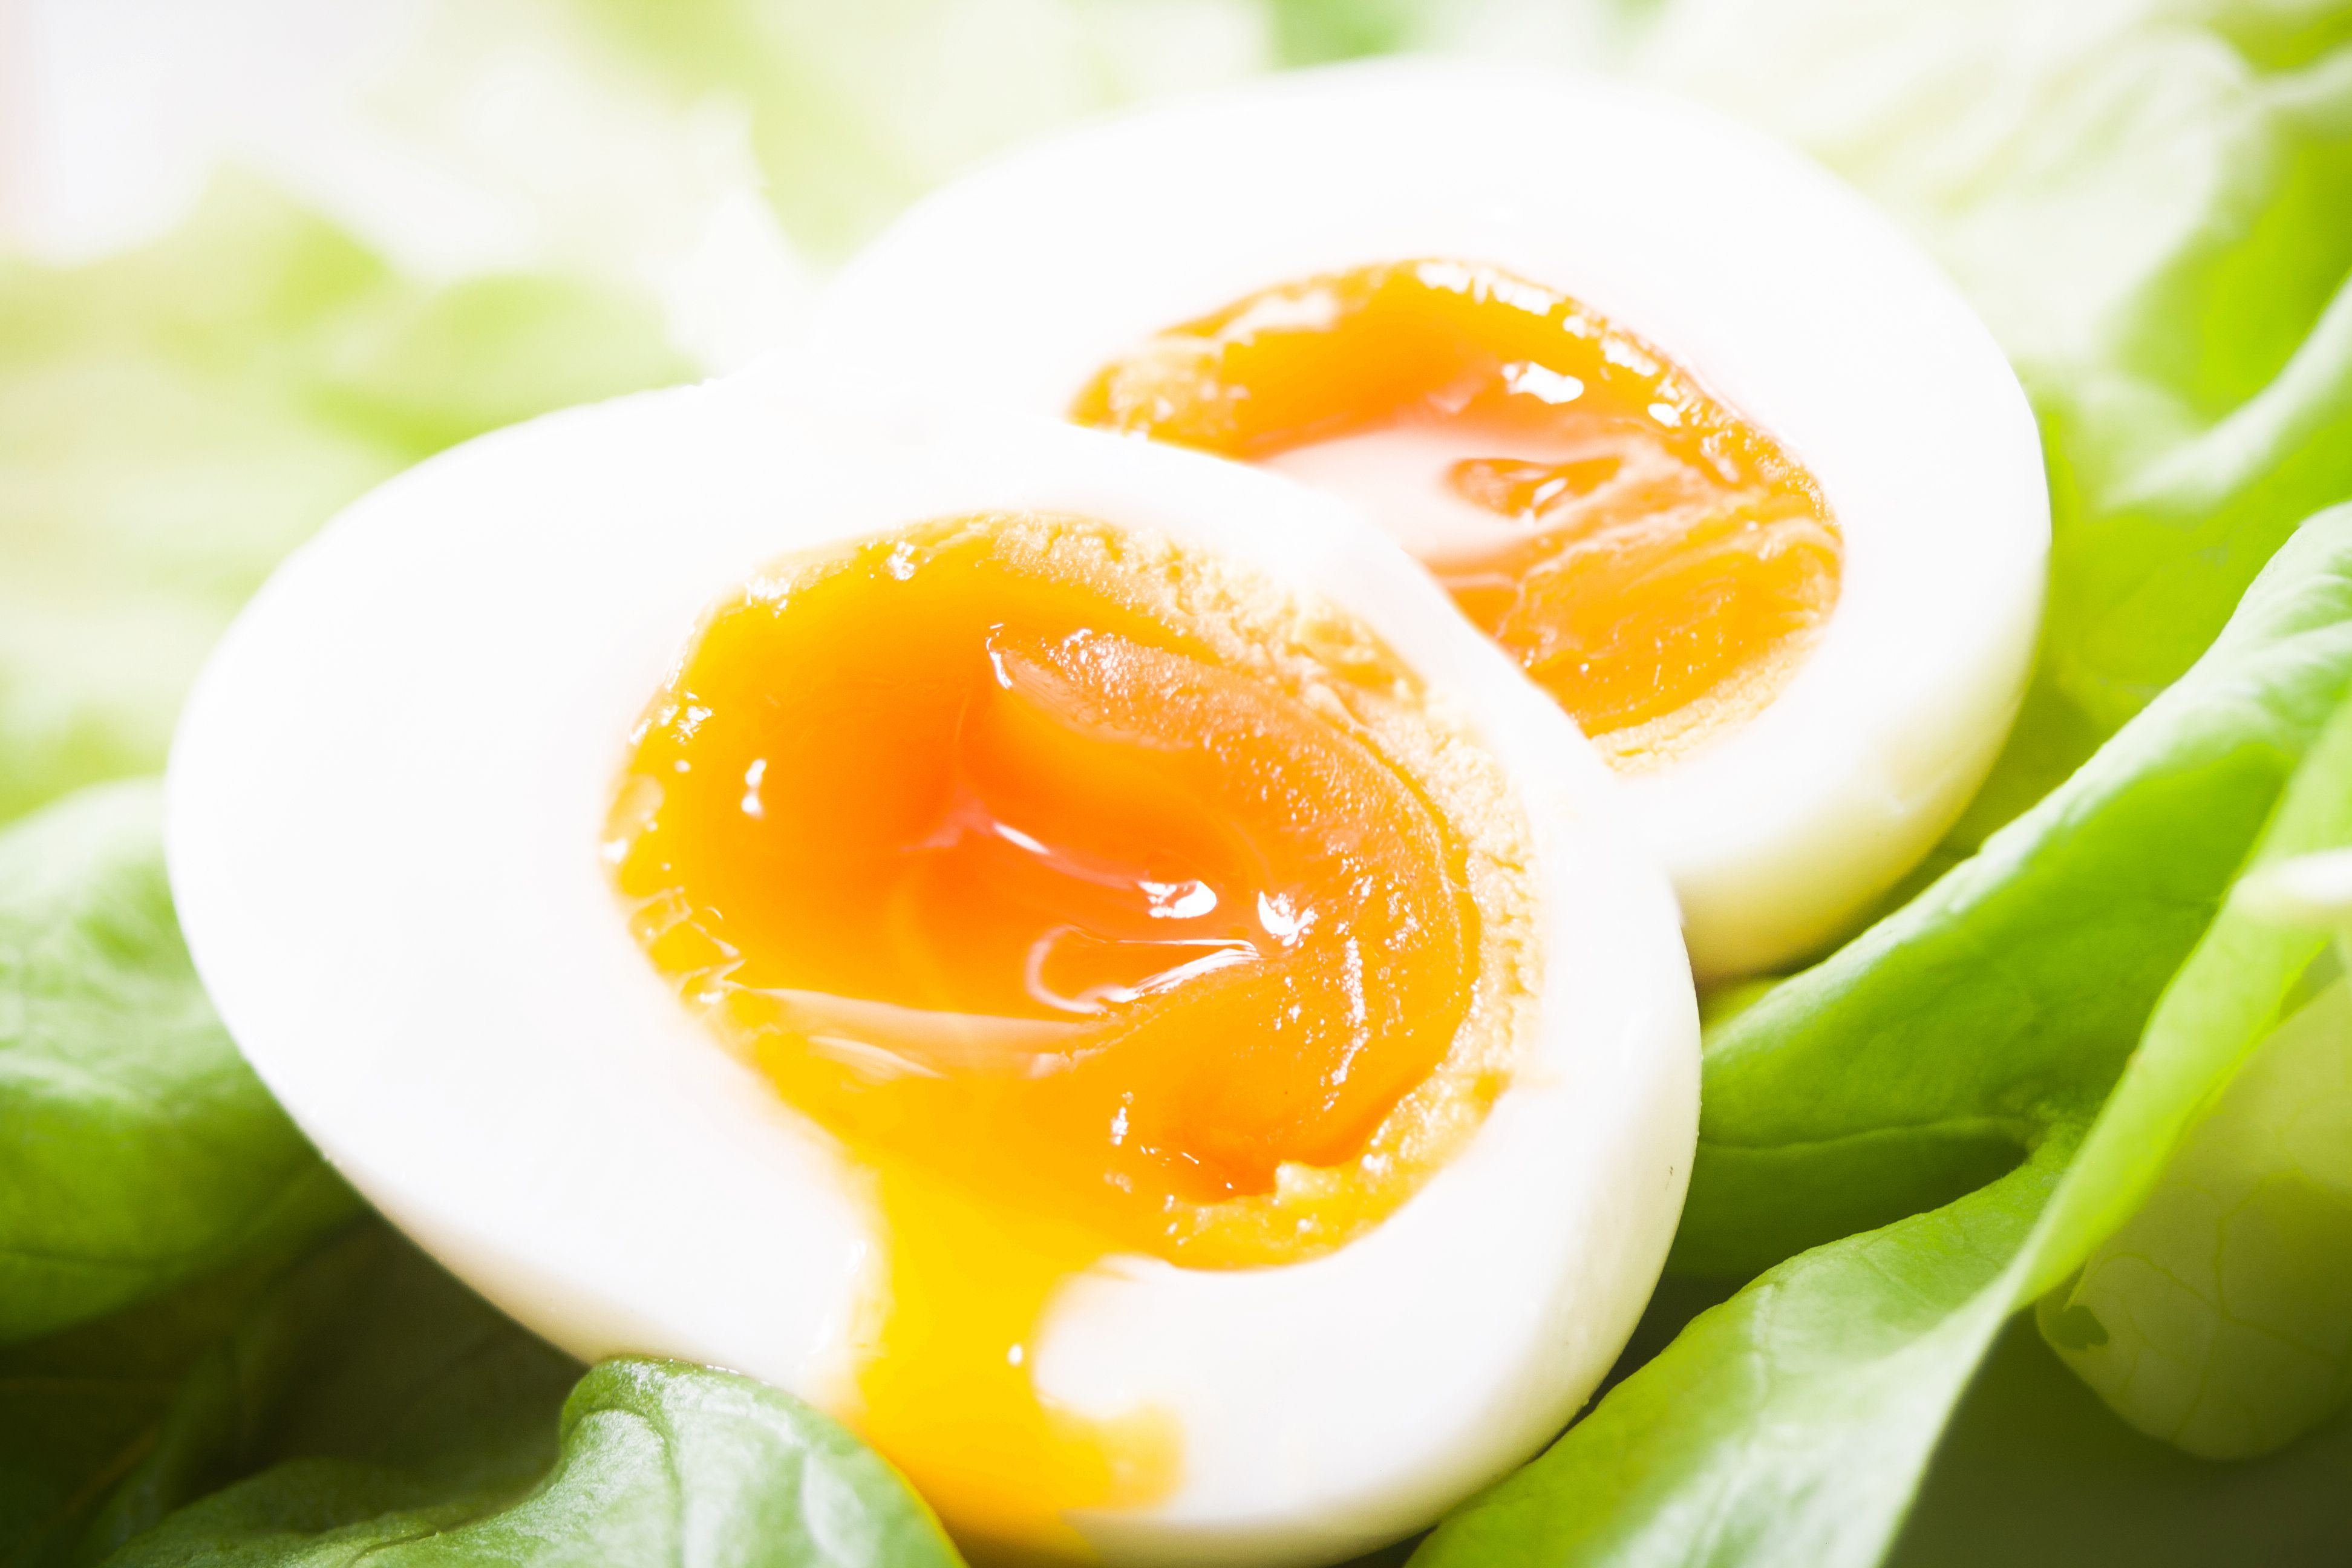 Lakukan Diet Telur Selama Seminggu Bisa Turunkan Berat Badan Hingga 5,5 Kg.  Begini Caranya! - Semua Halaman - CewekBanget